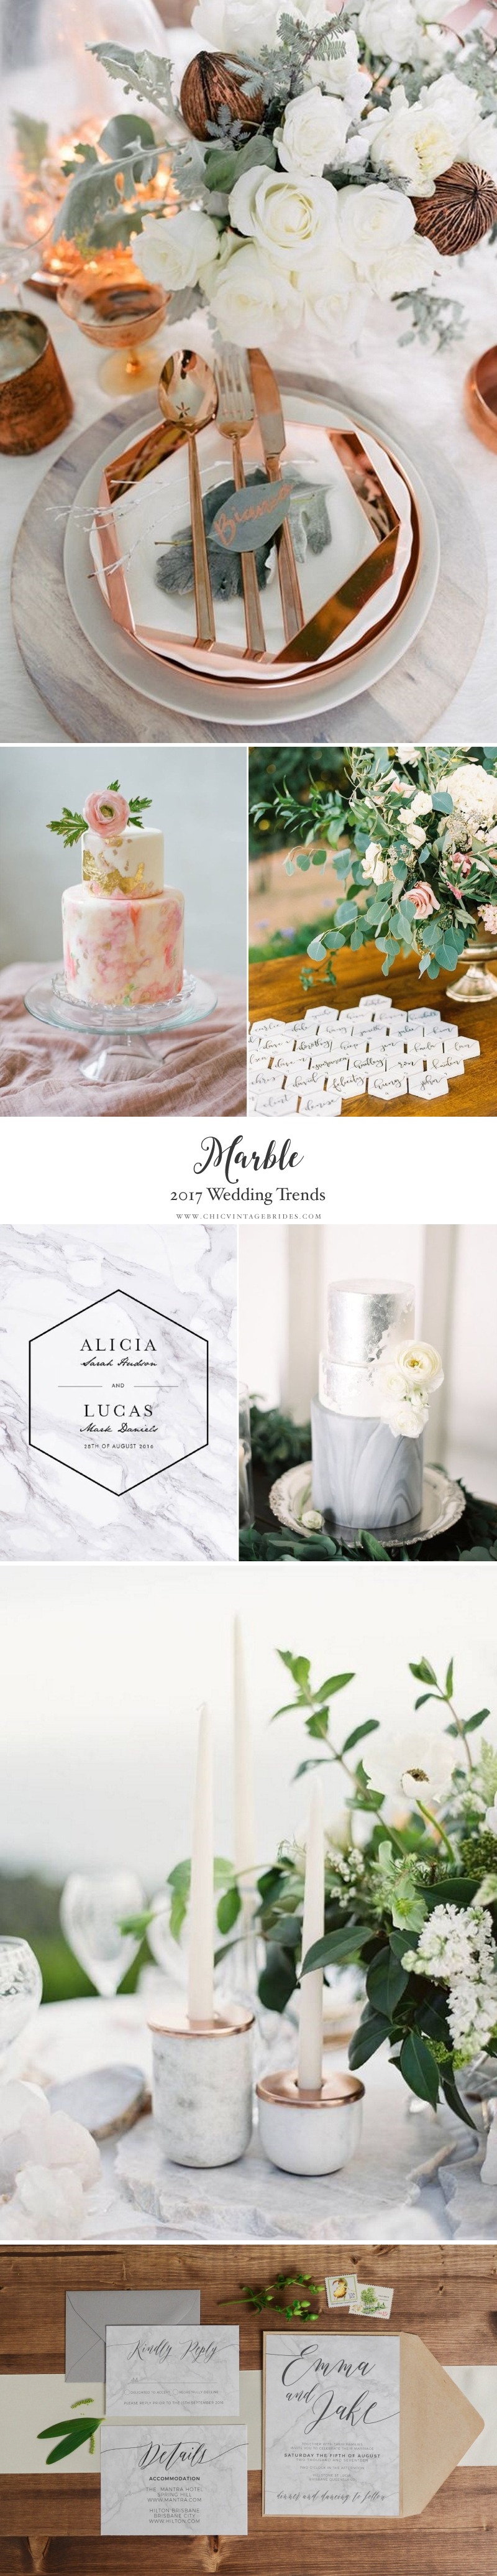 Top Wedding Trends 2017 - Marble